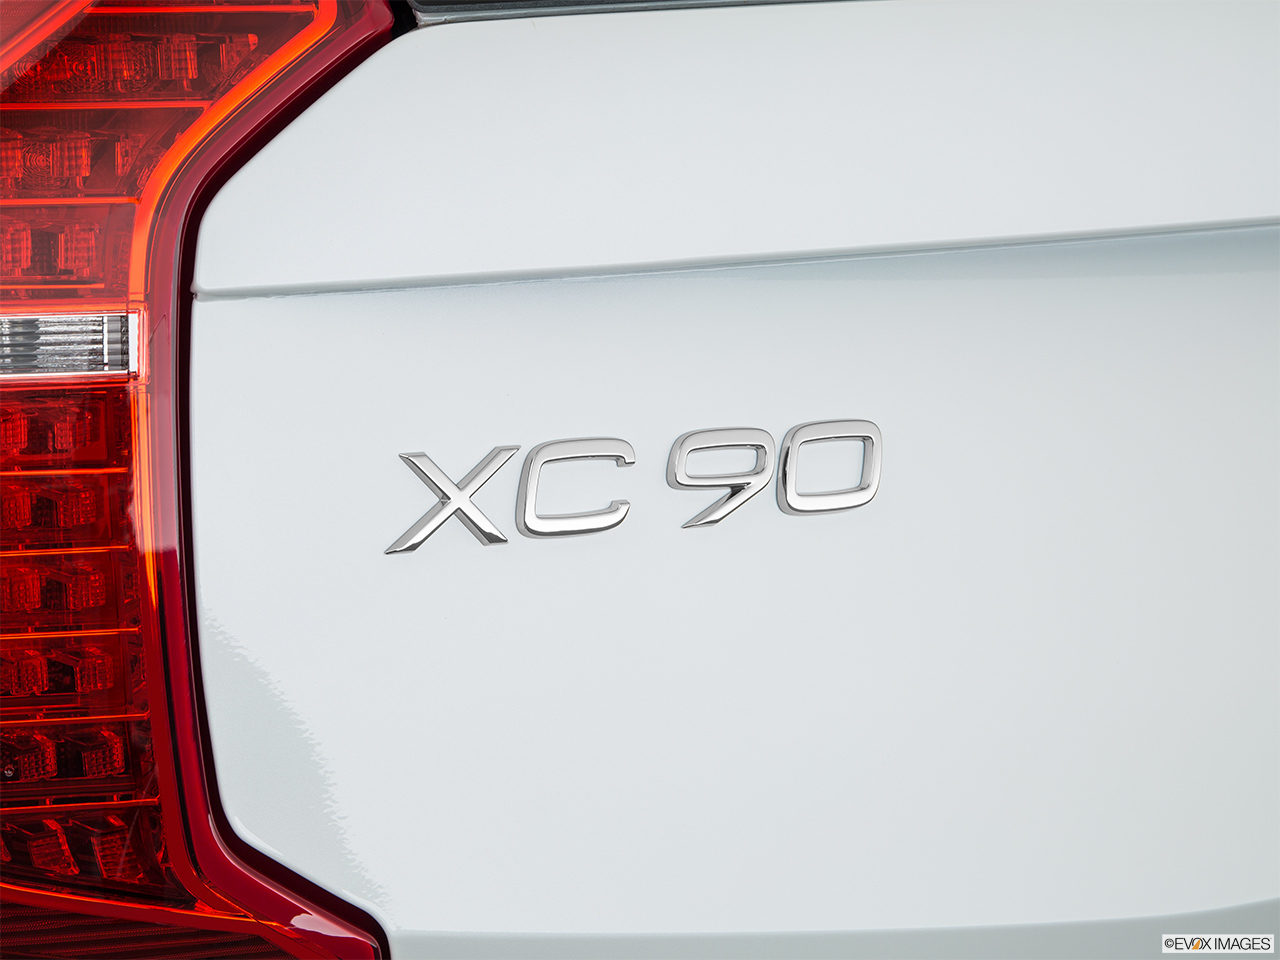 2019 Volvo XC90  T8 Inscription eAWD Plug-in Hybrid Rear model badge/emblem 